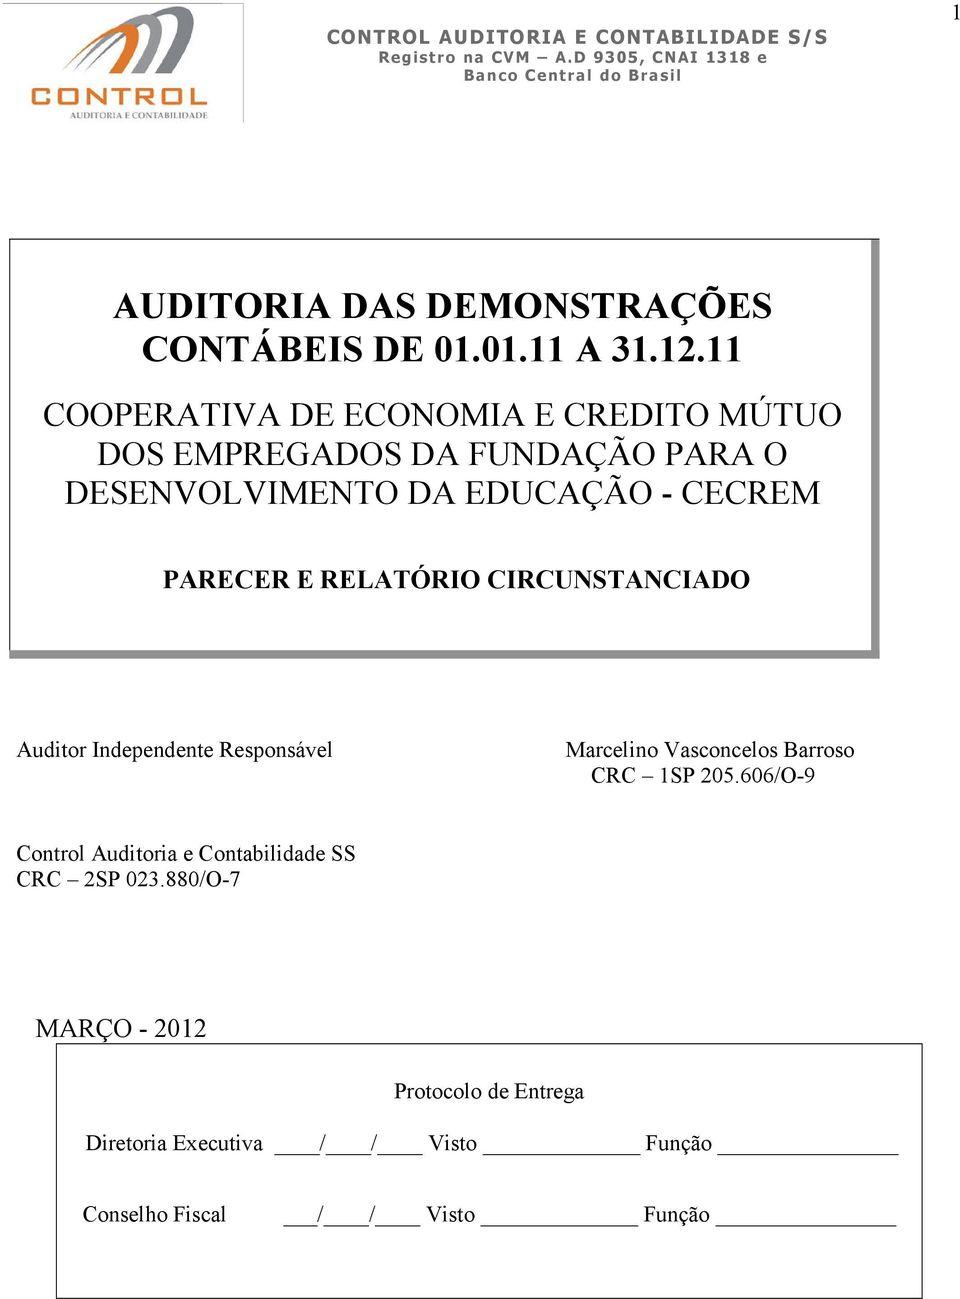 PARECER E RELATÓRIO CIRCUNSTANCIADO Auditor Independente Responsável Marcelino Vasconcelos Barroso CRC 1SP 205.